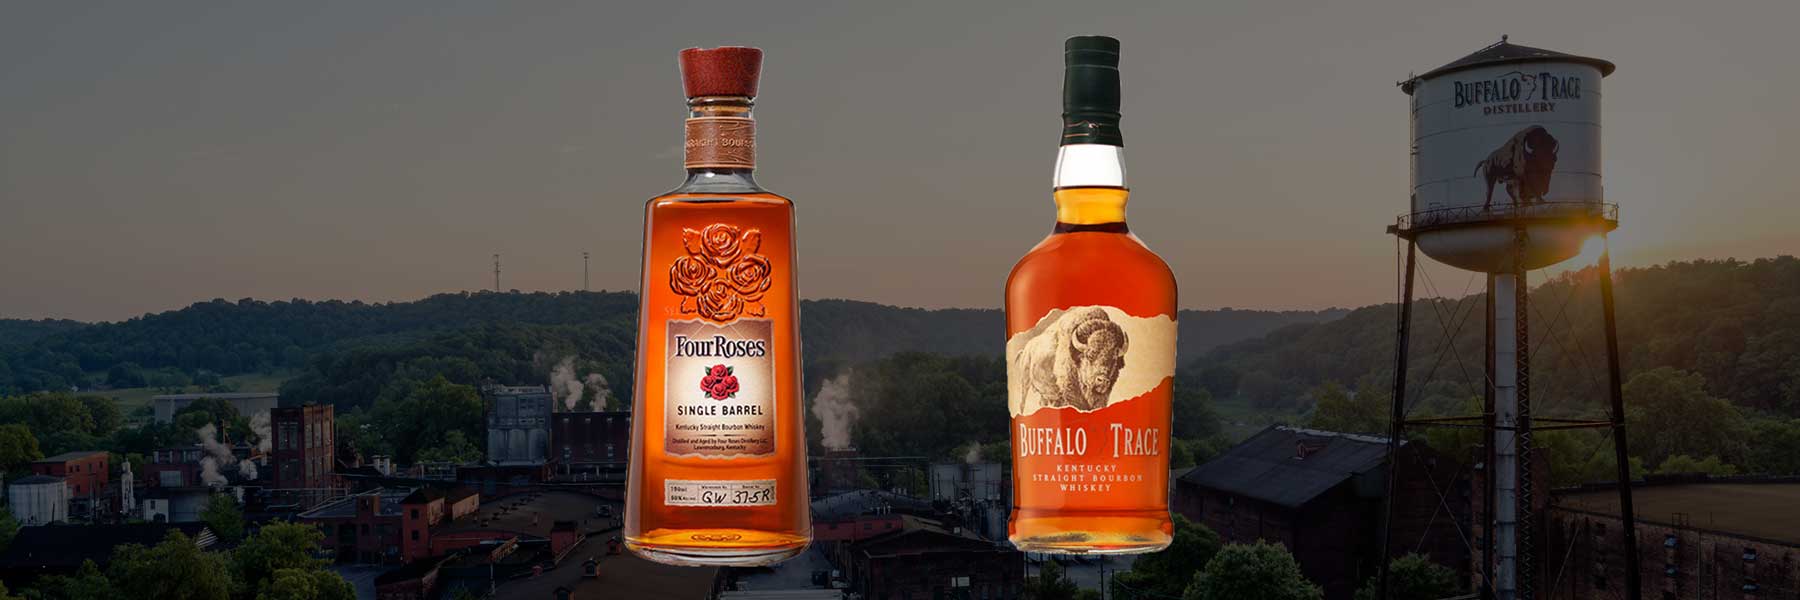 Four Roses vs Buffalo Trace | Comparing single barrel & Buffalo Trace bourbon